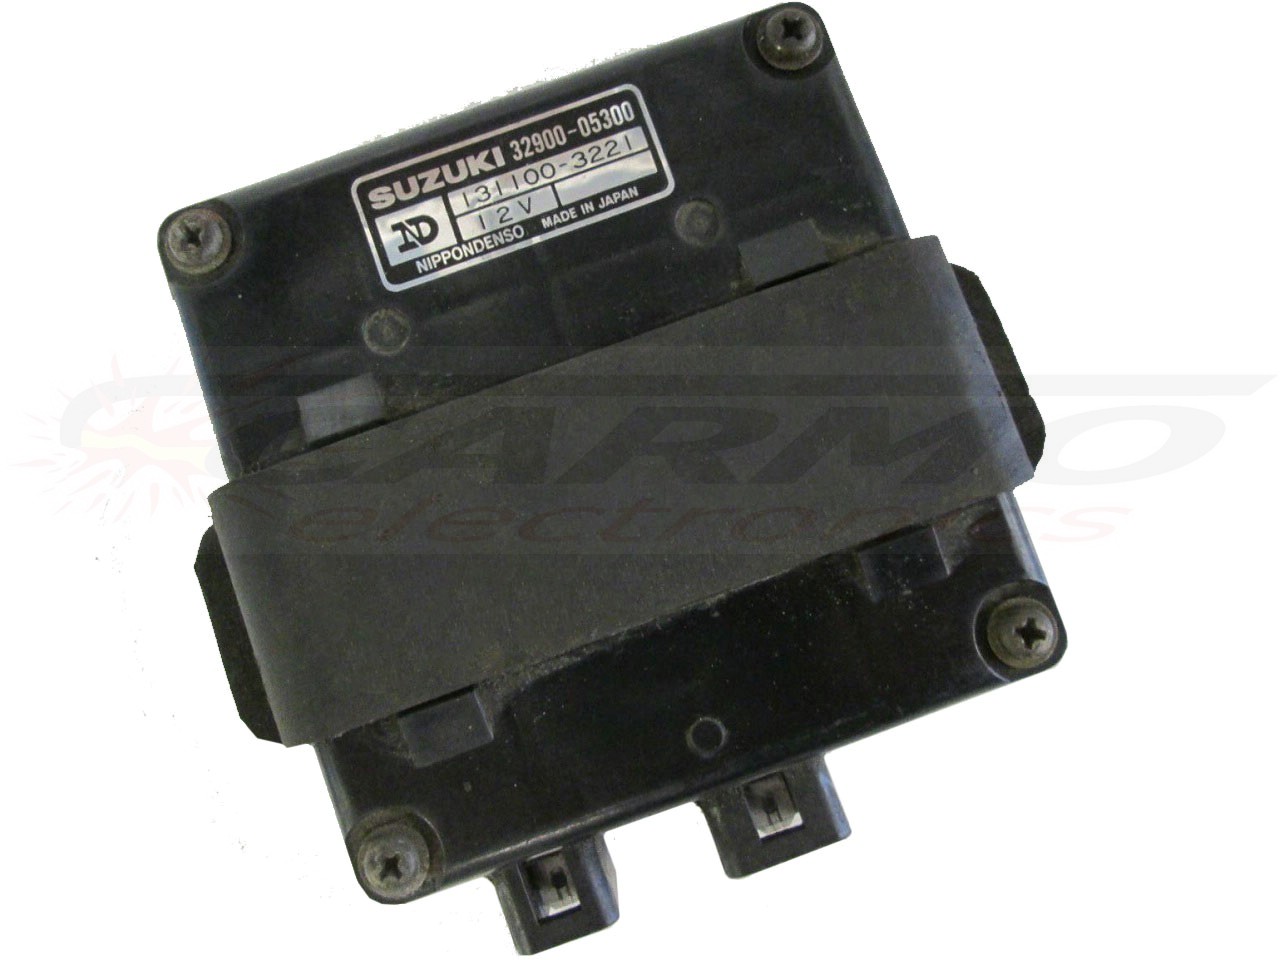 GN125 (32900-05300, 131100-3221) TCI CDI dispositif de commande boîte noire